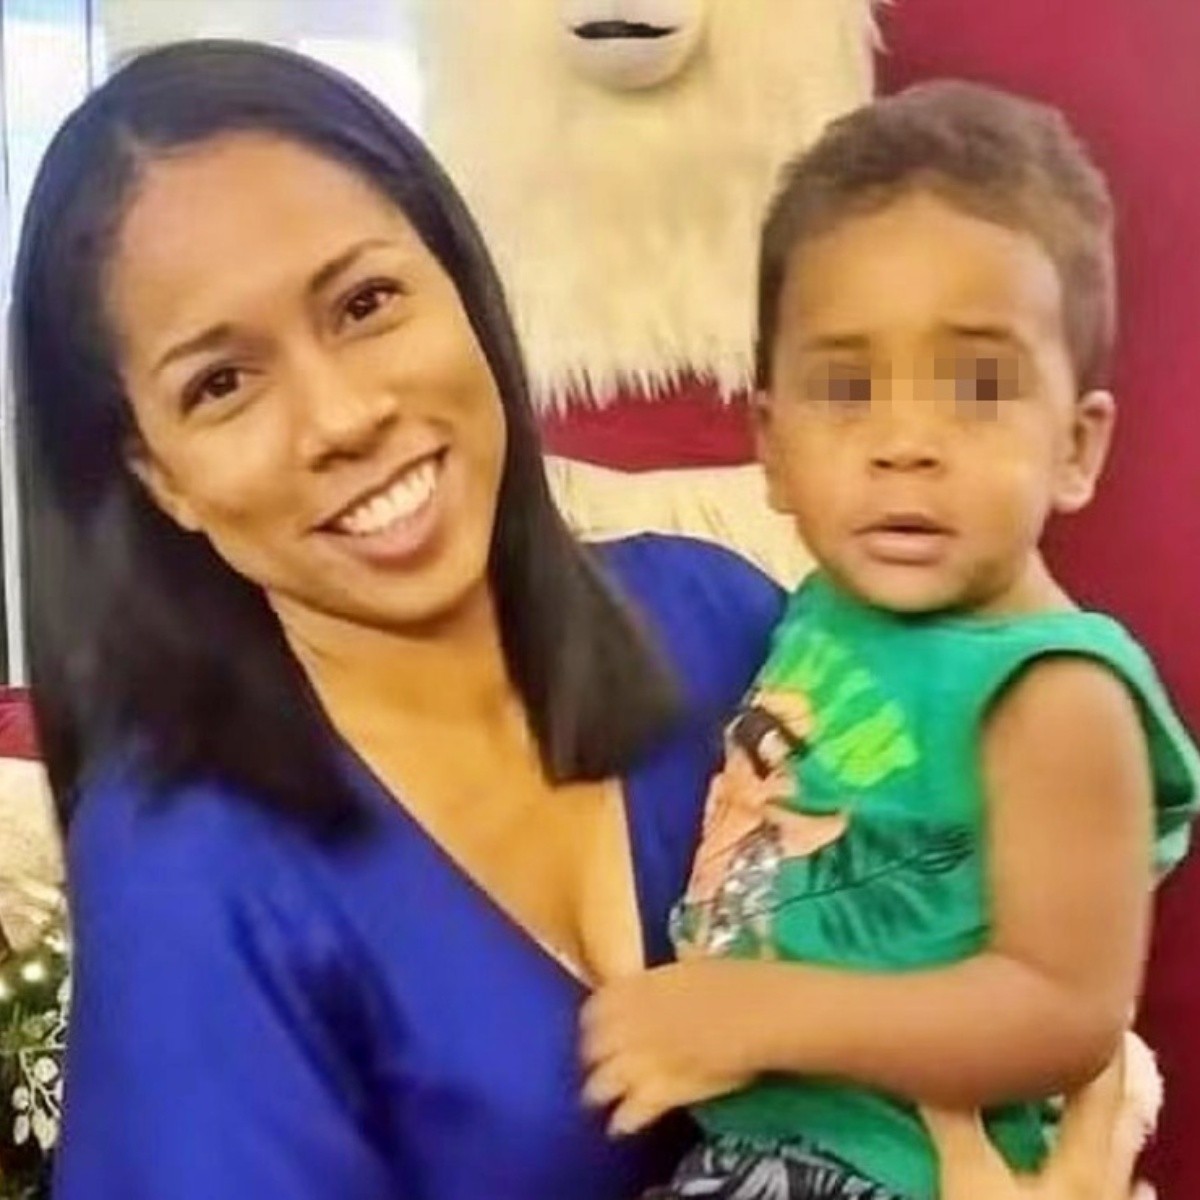 mamá y su hijo de seis años mueren electrocutados por una lavadora defectuosa en brasil